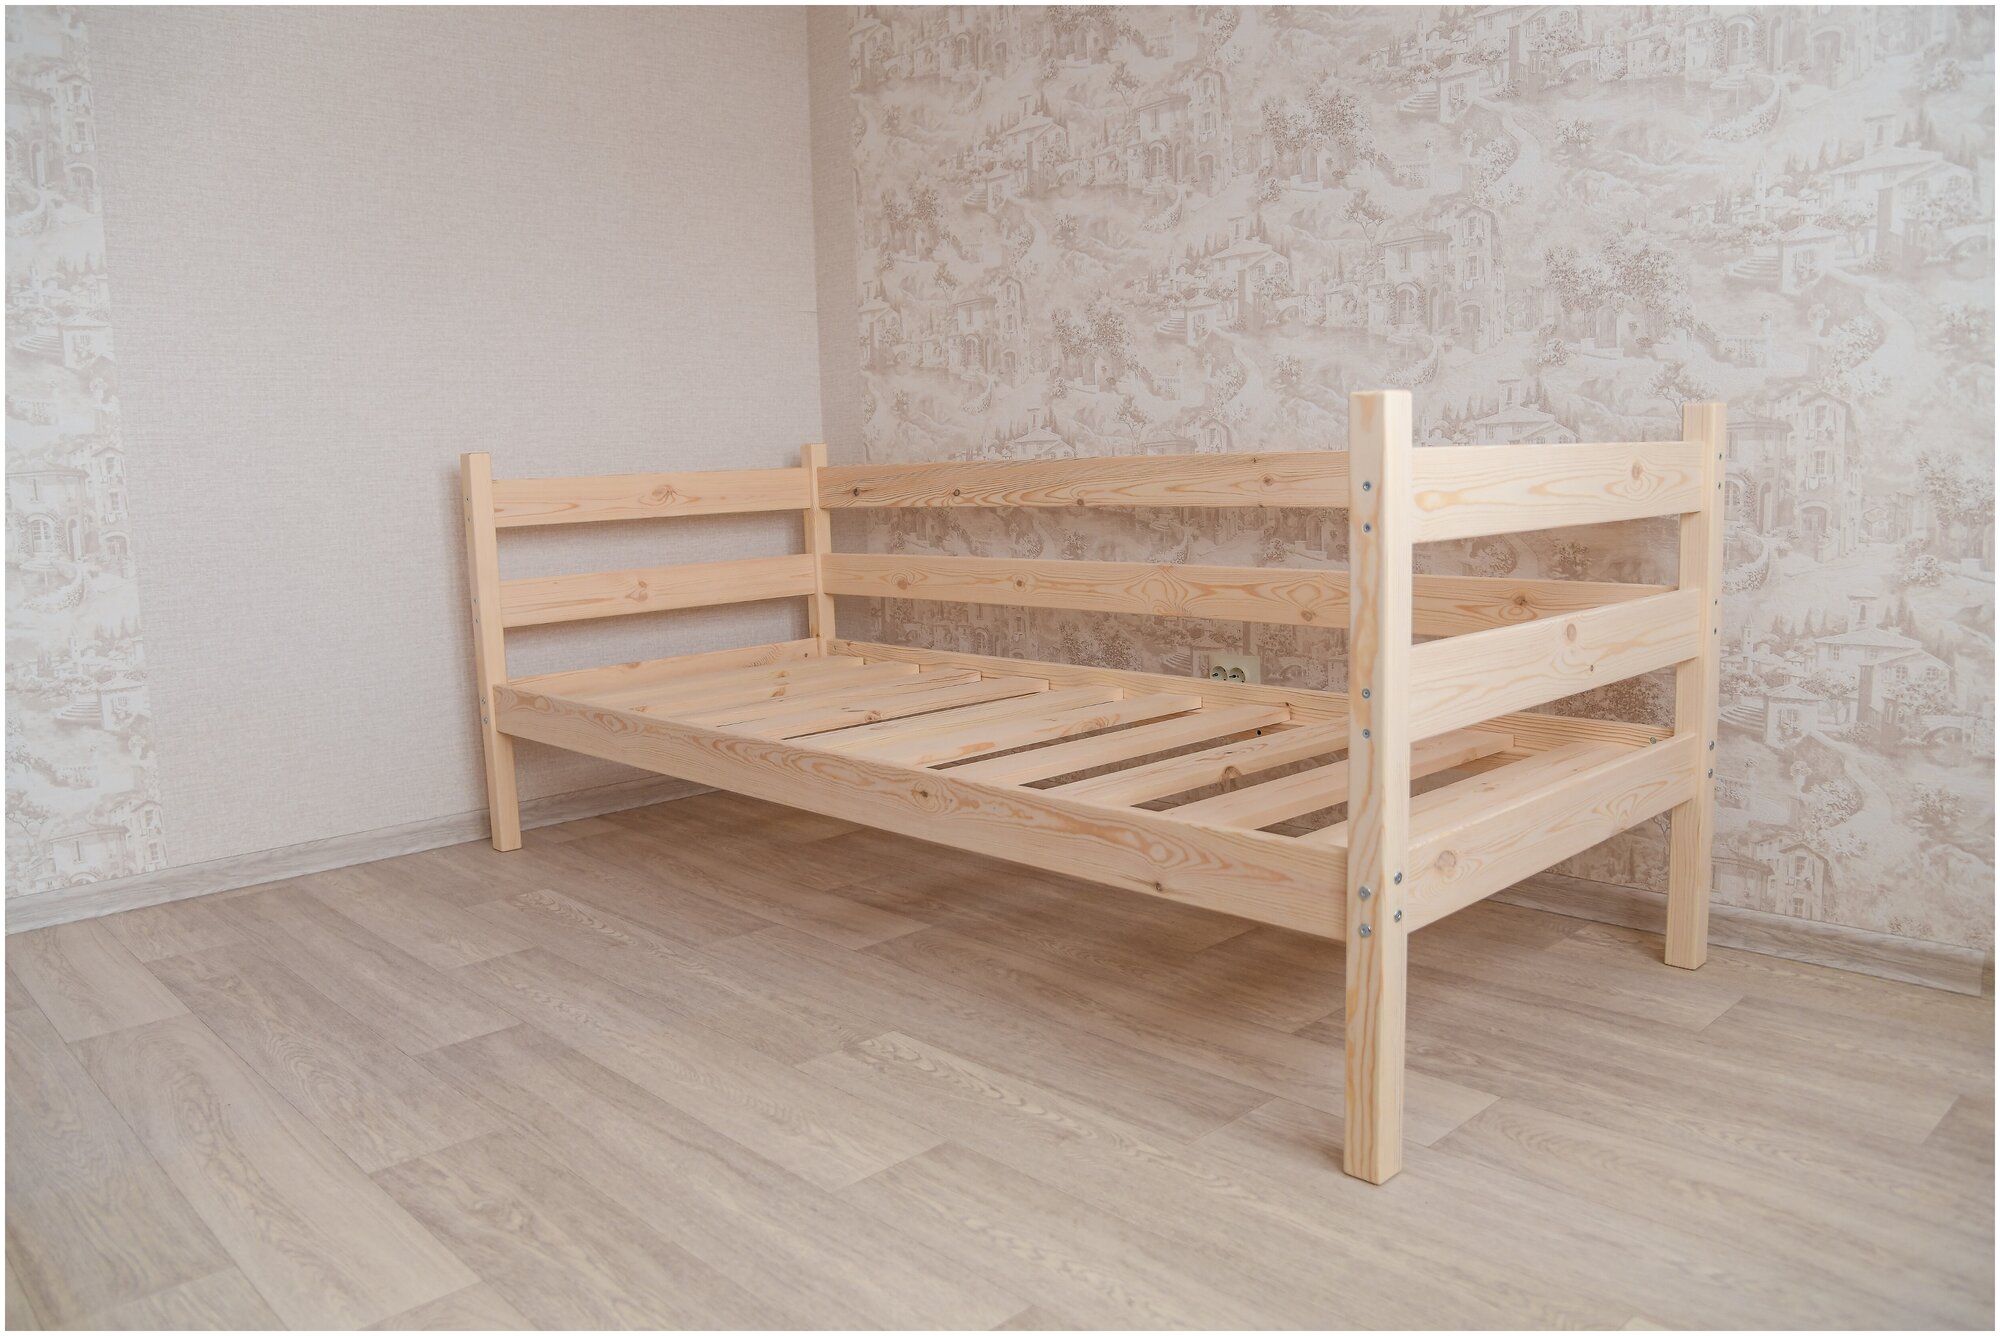 Односпальная кровать " Софа" / Деревянная кровать "Софа" размер 200*90 см